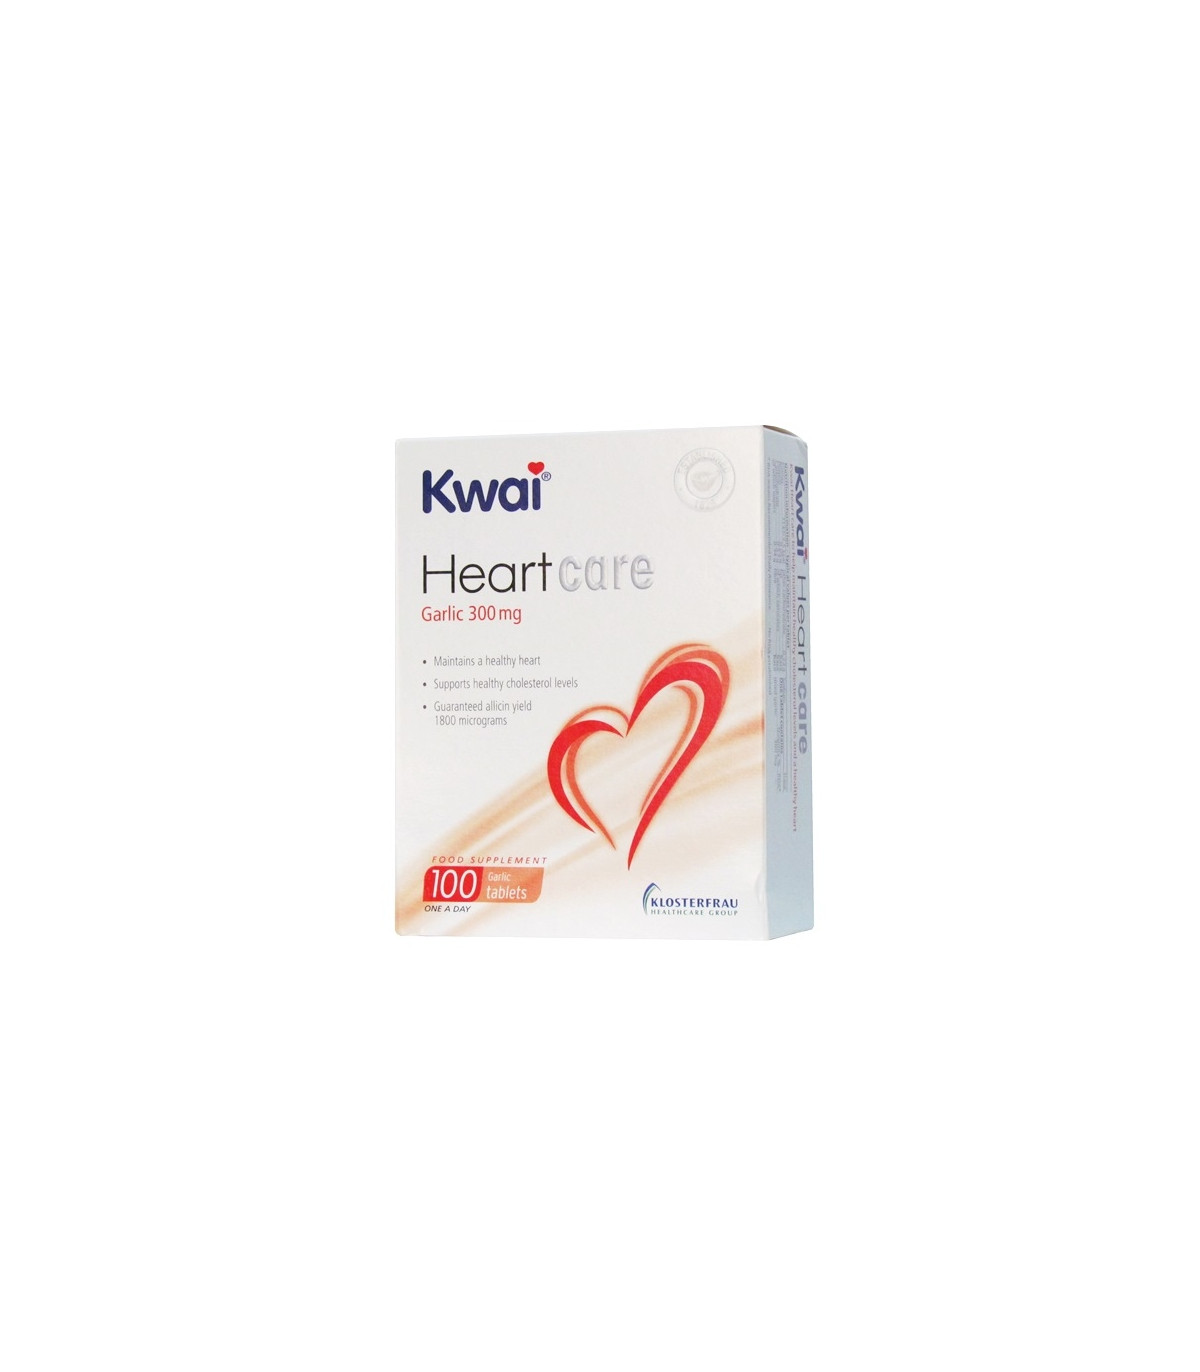 Kwai Heart Care Garlic - 100 Tablets